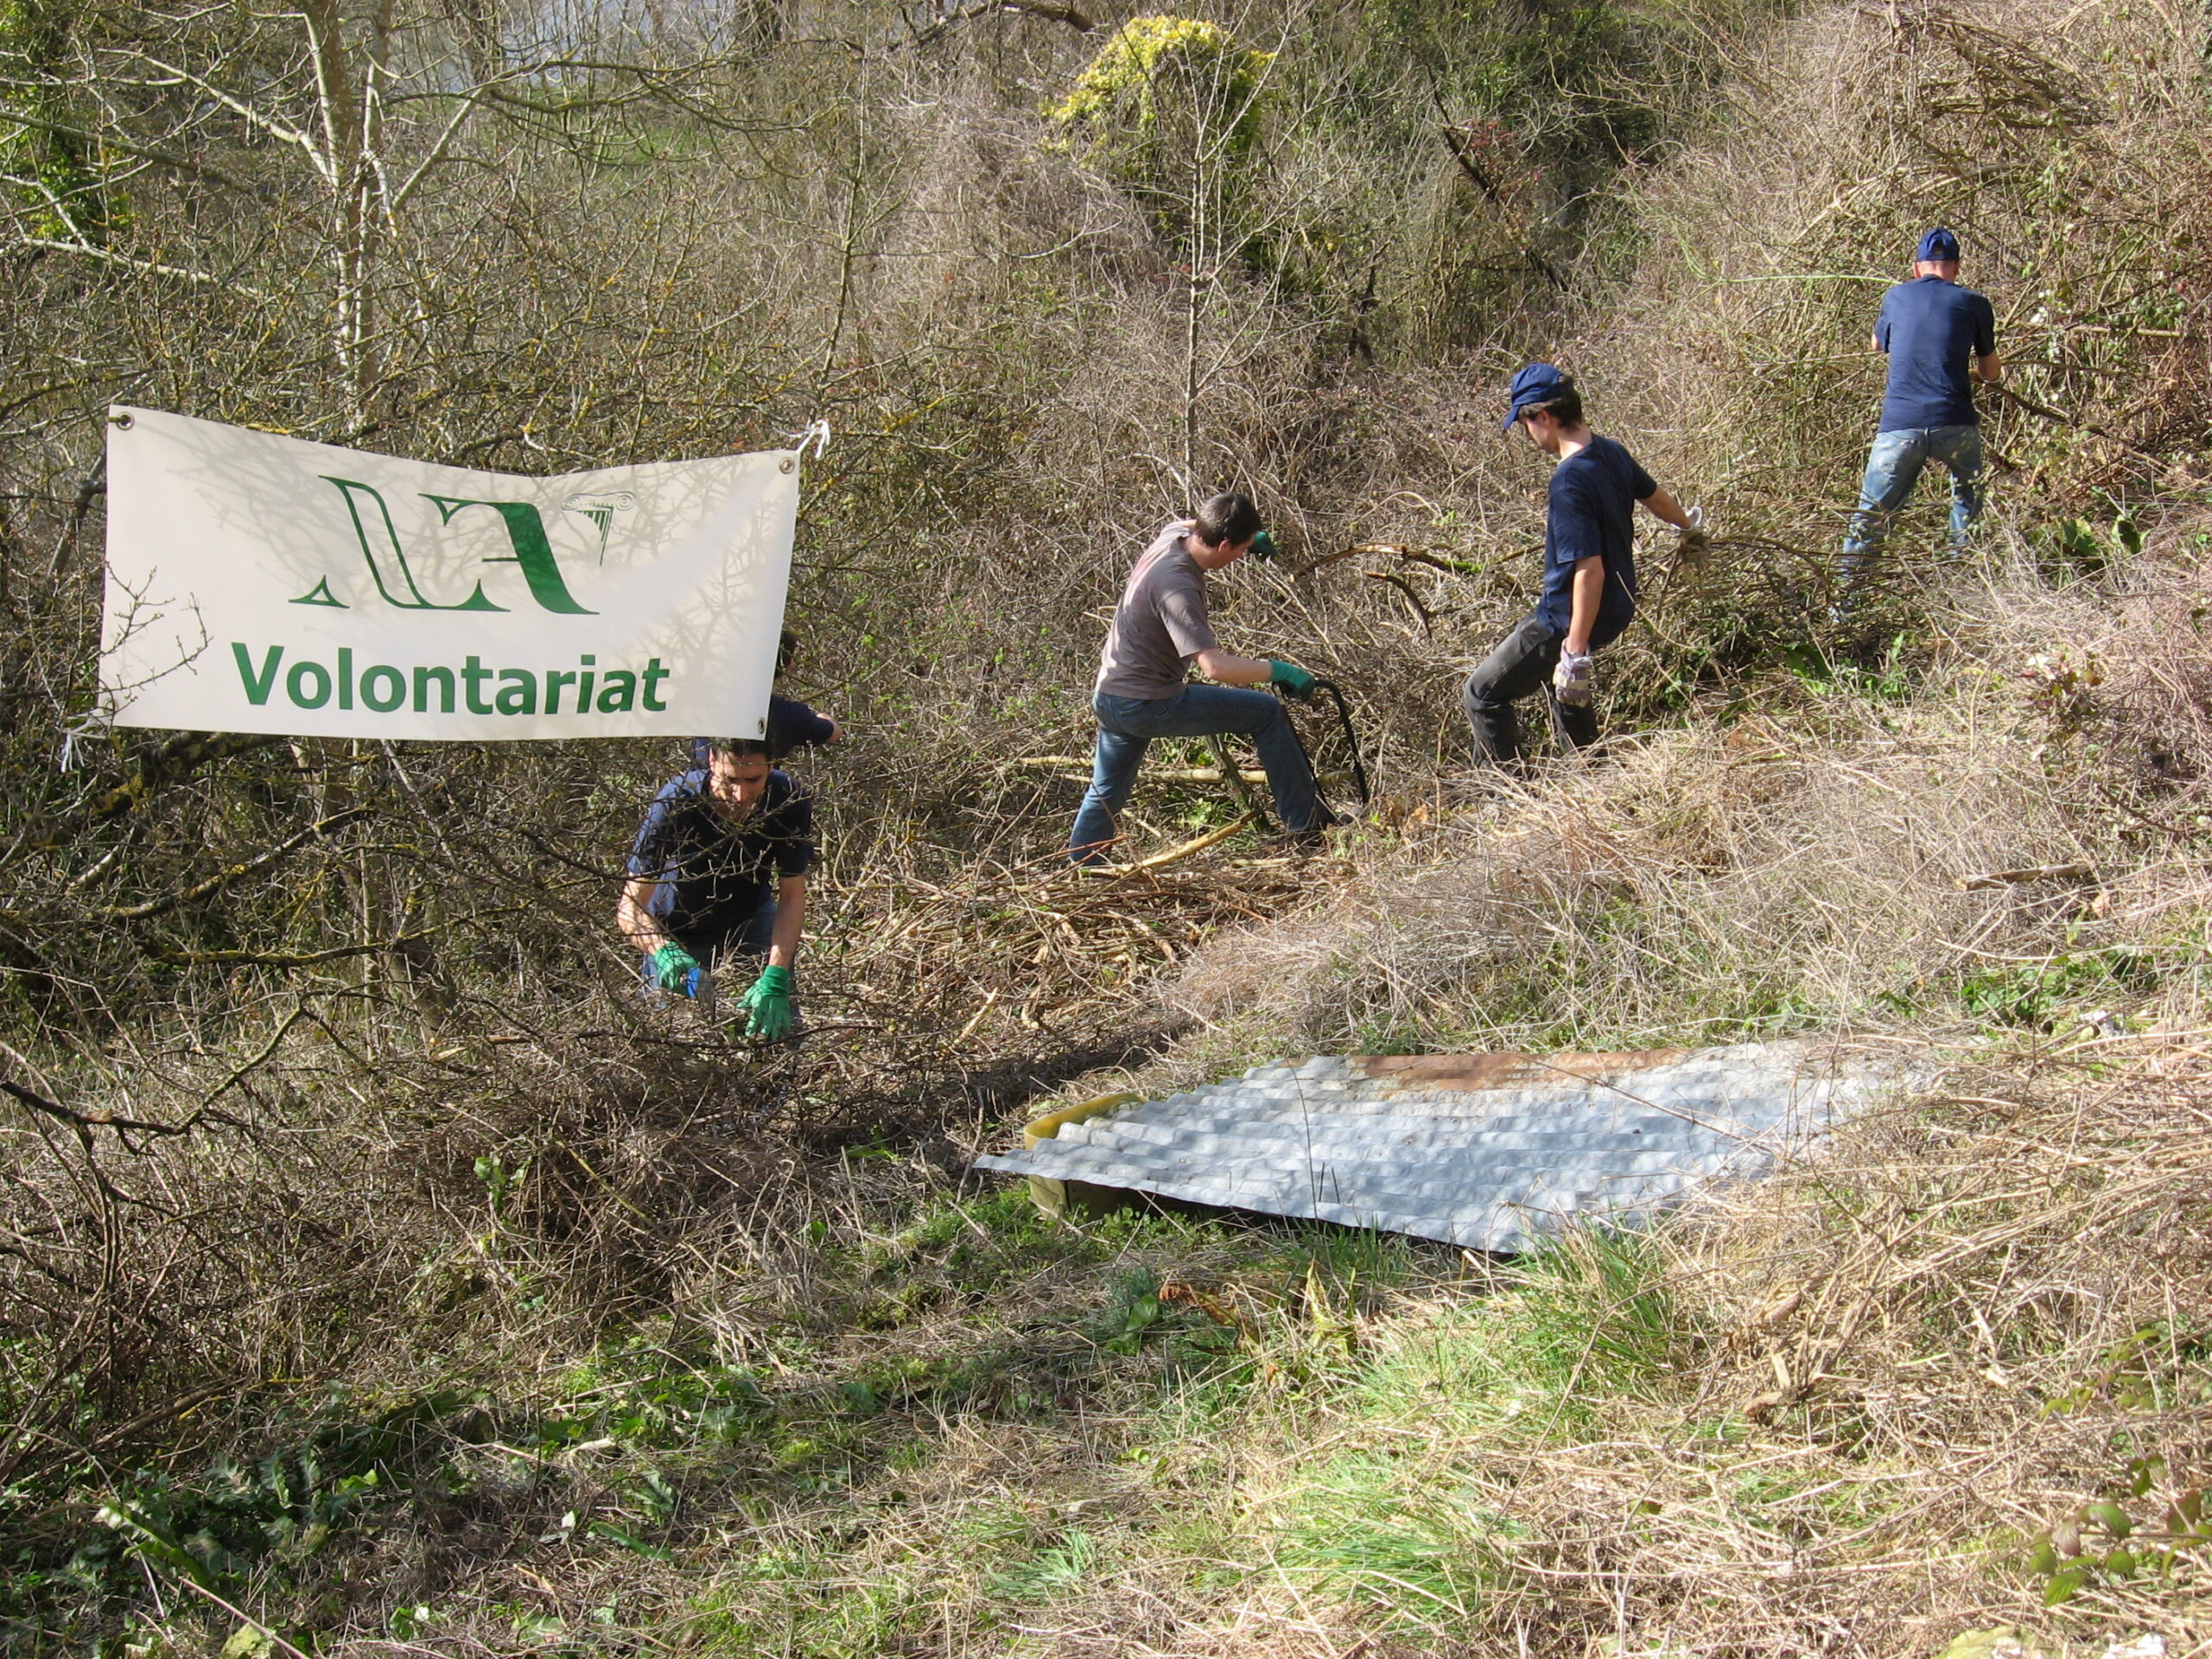 Les volontaires de Nouvelle Acropole Rouen se sont associés au Club alpiniste de Haute Normandie pour préserver les Roches de Connelles